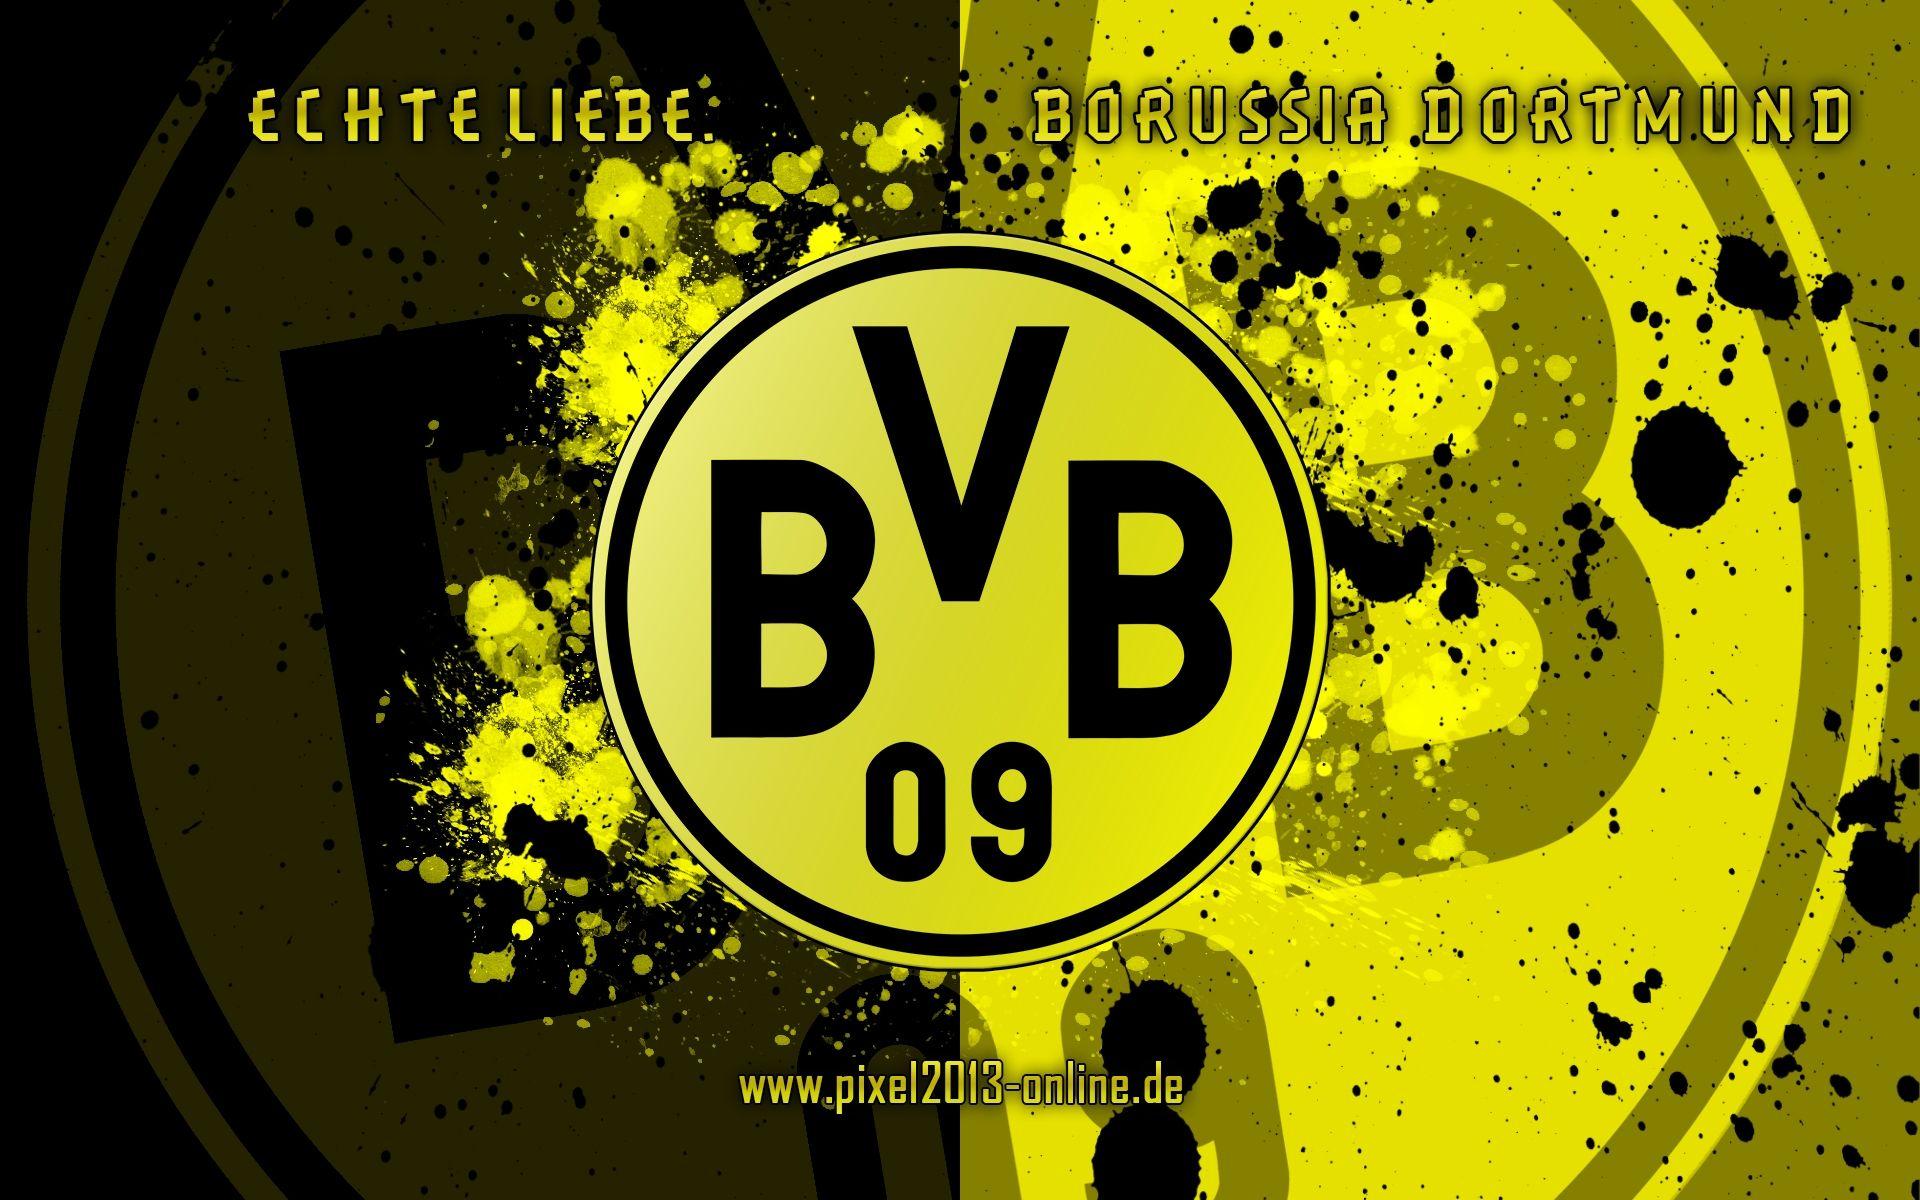 Borussia Dortmund HD Wallpaper And Photo download